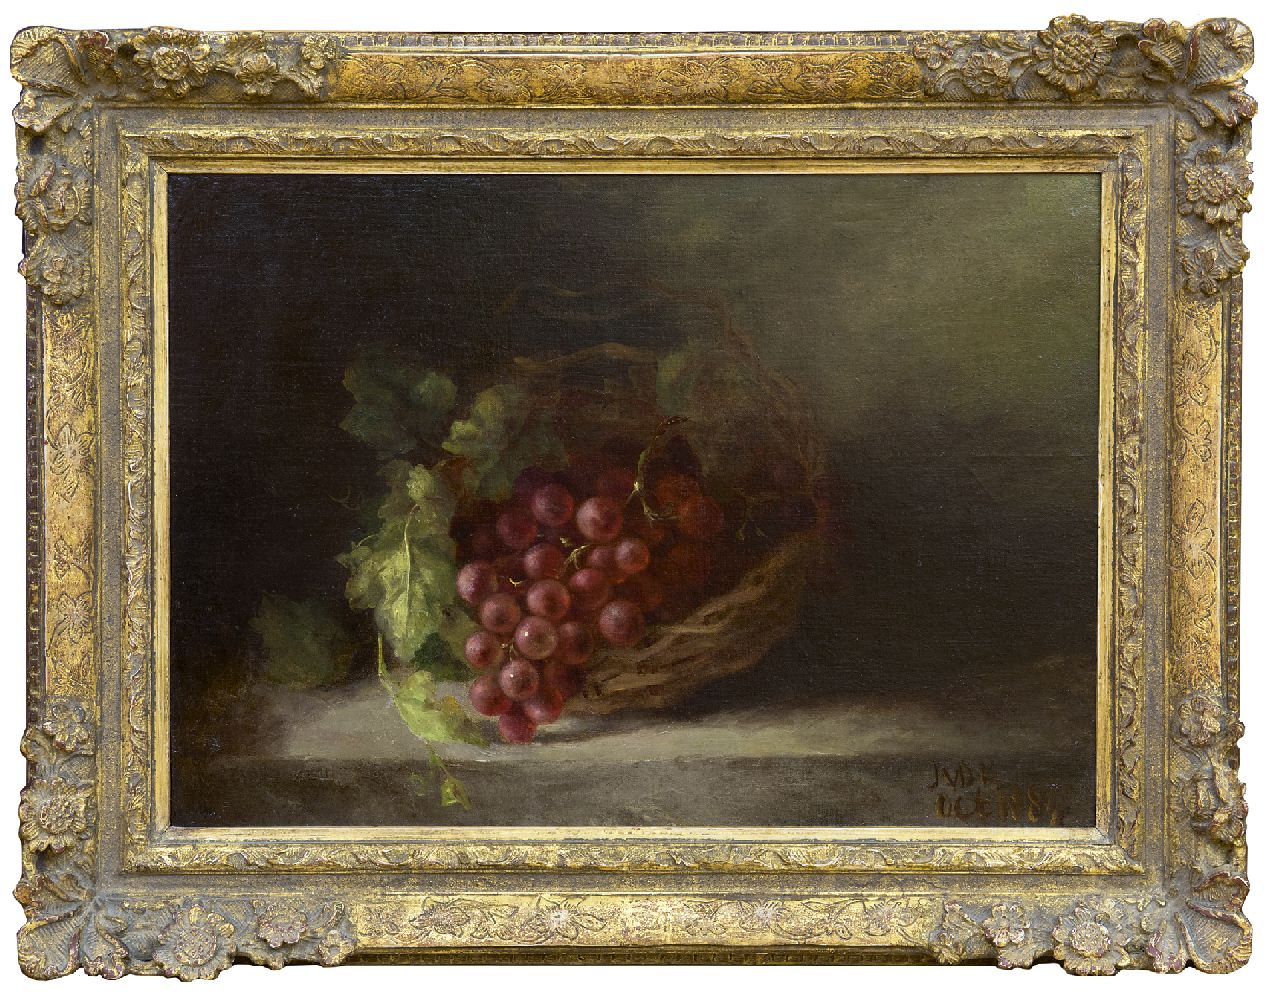 Kasteele J.M. van de | Johanna Margaretha van de Kasteele | Schilderijen te koop aangeboden | Stilleven van druiven in een mand, olieverf op doek op paneel 35,8 x 50,6 cm, gesigneerd rechtsonder met initialen en gedateerd oct. 1884